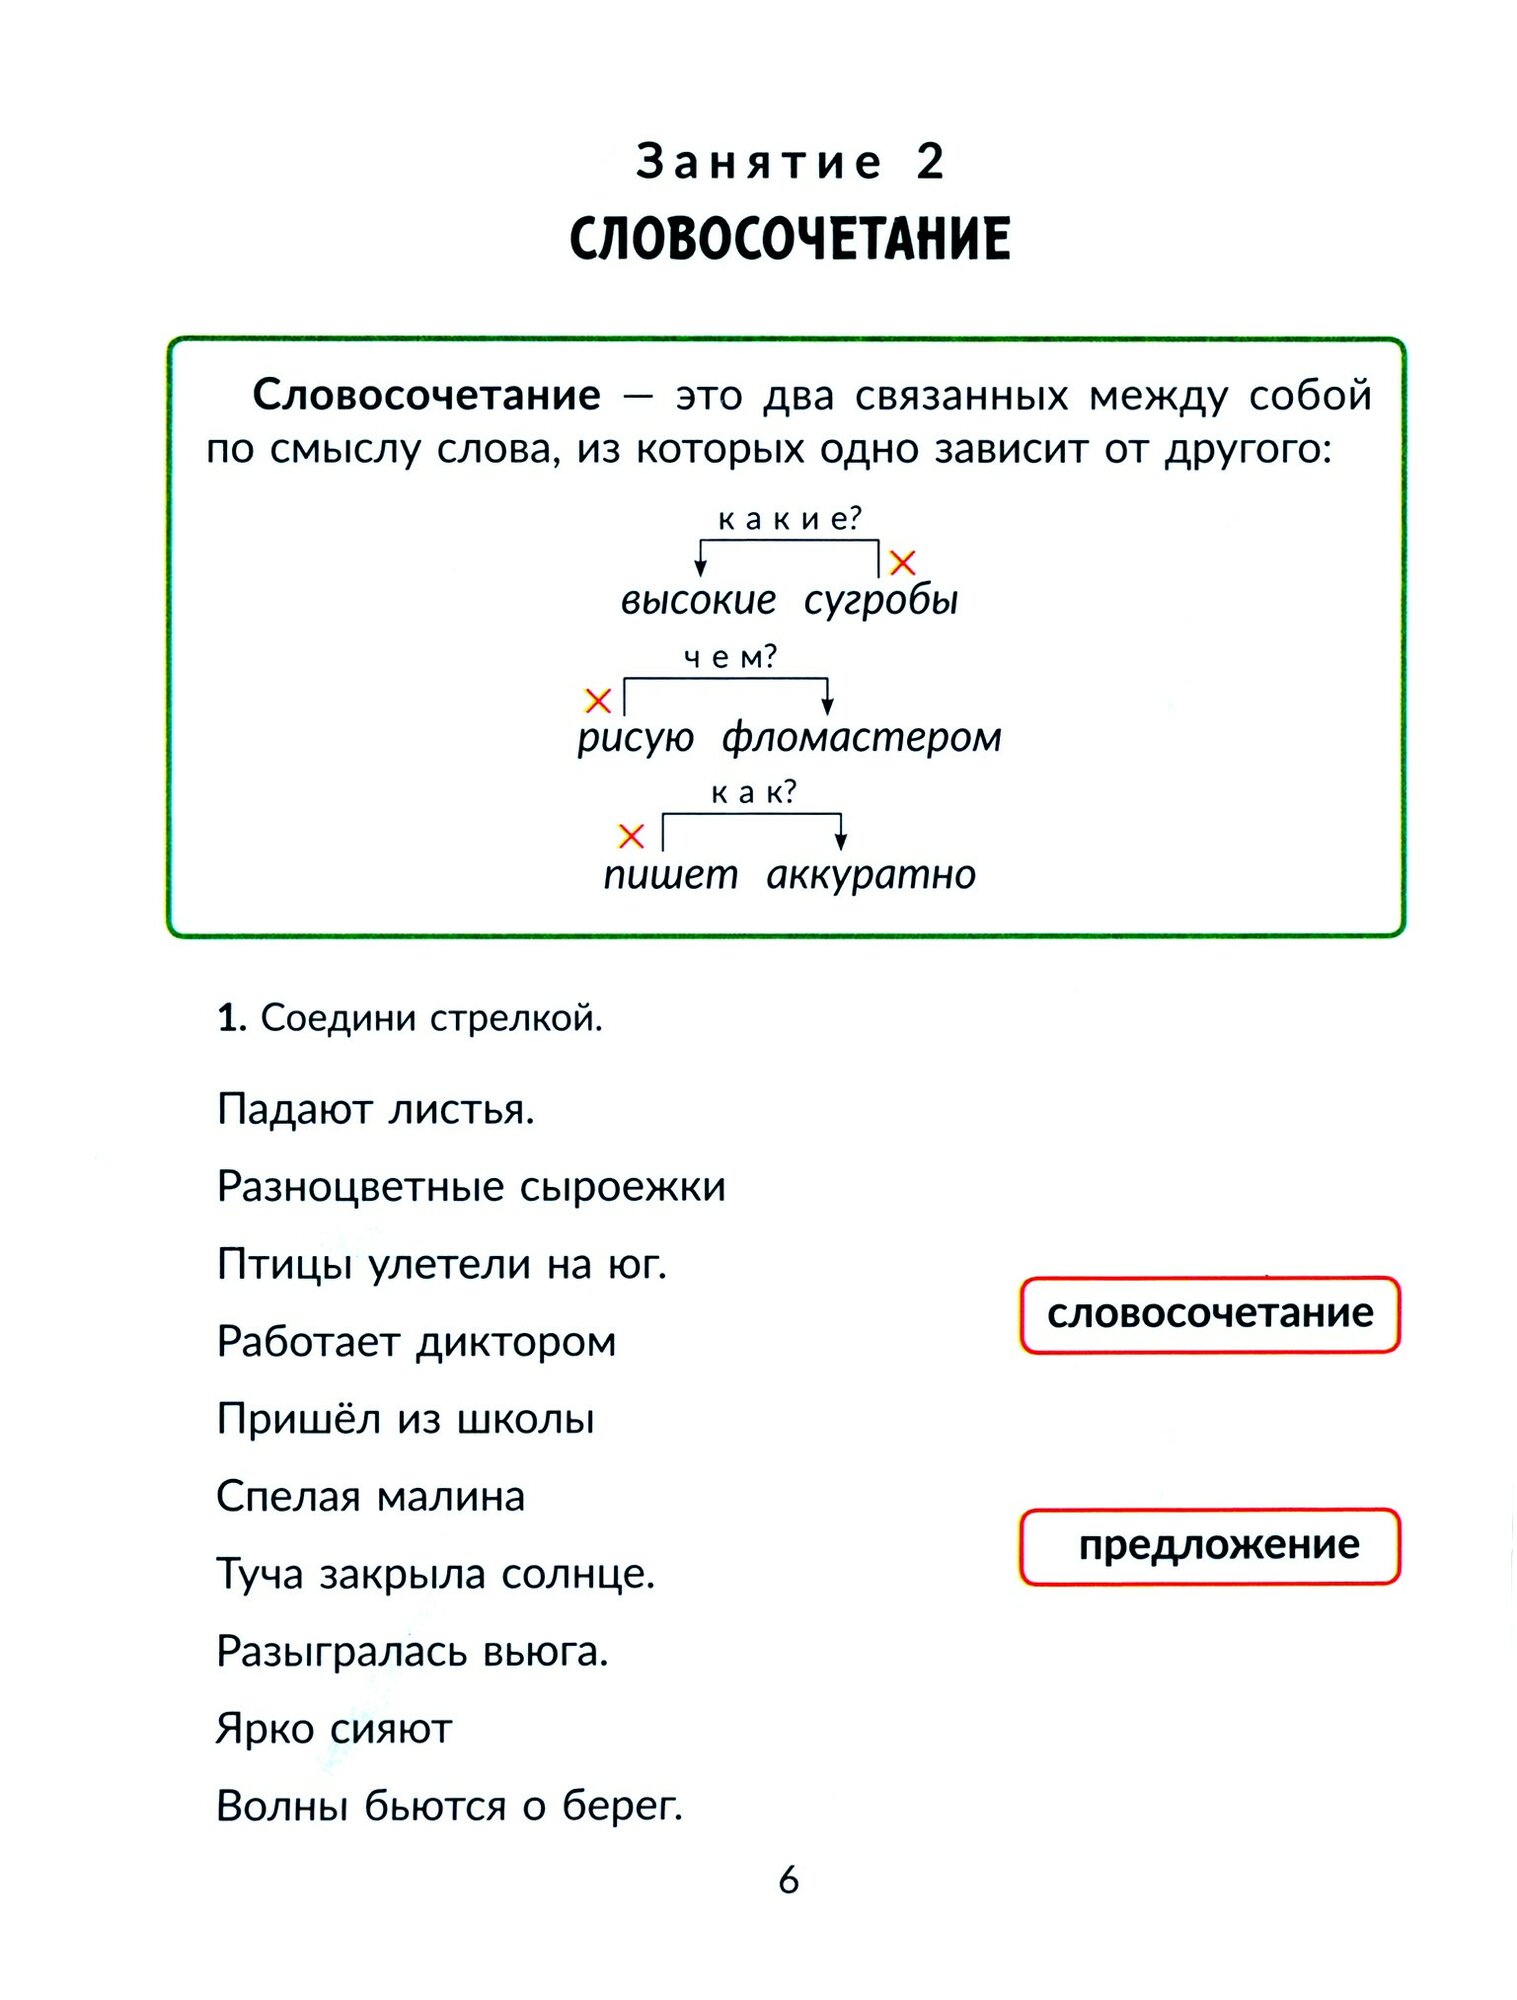 Русский язык. 3 класс. Коррекционно-развивающие занятия - фото №3